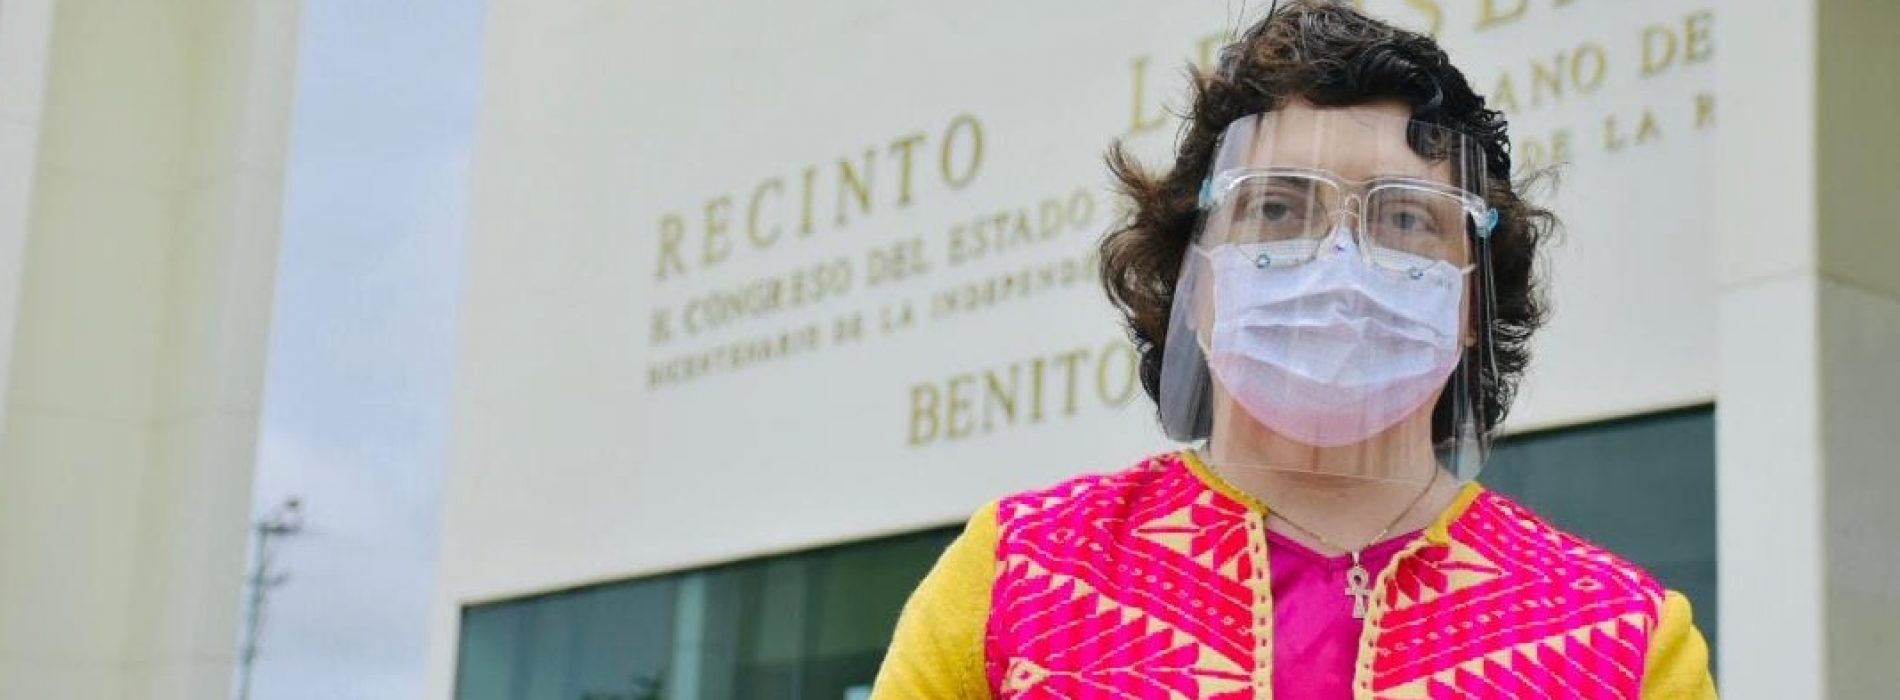 Legislar a favor de los sectores vulnerables, un compromiso indeclinable: diputada Aurora López